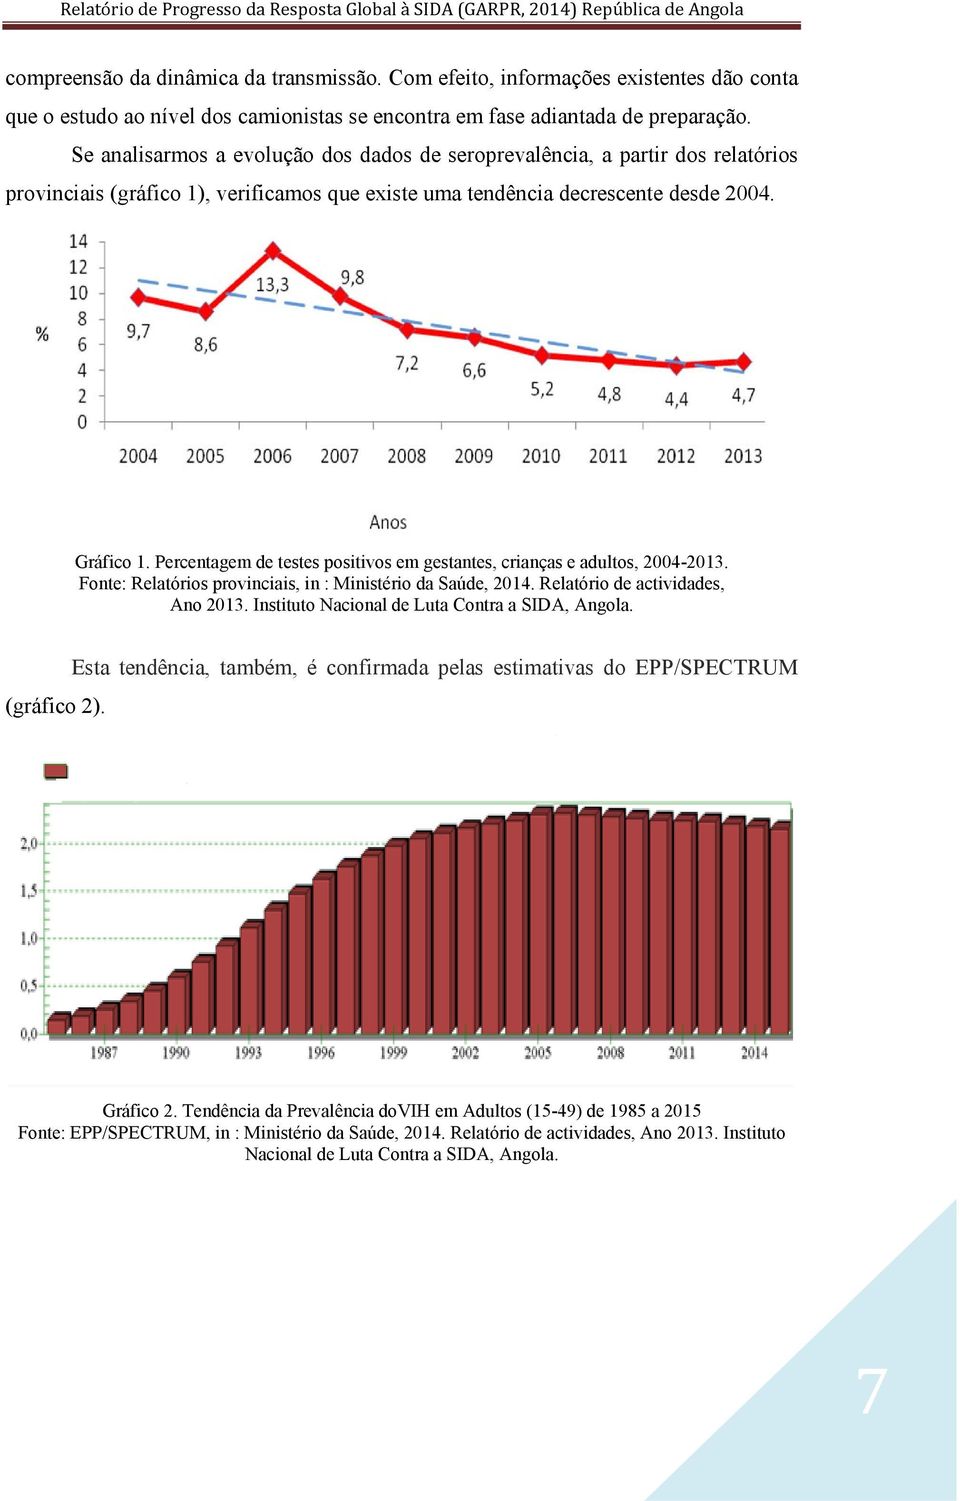 Percentagem de testes positivos em gestantes, crianças e adultos, 2004-2013. Fonte: Relatórios provinciais, in : Ministério da Saúde, 2014. Relatório de actividades, Ano 2013.